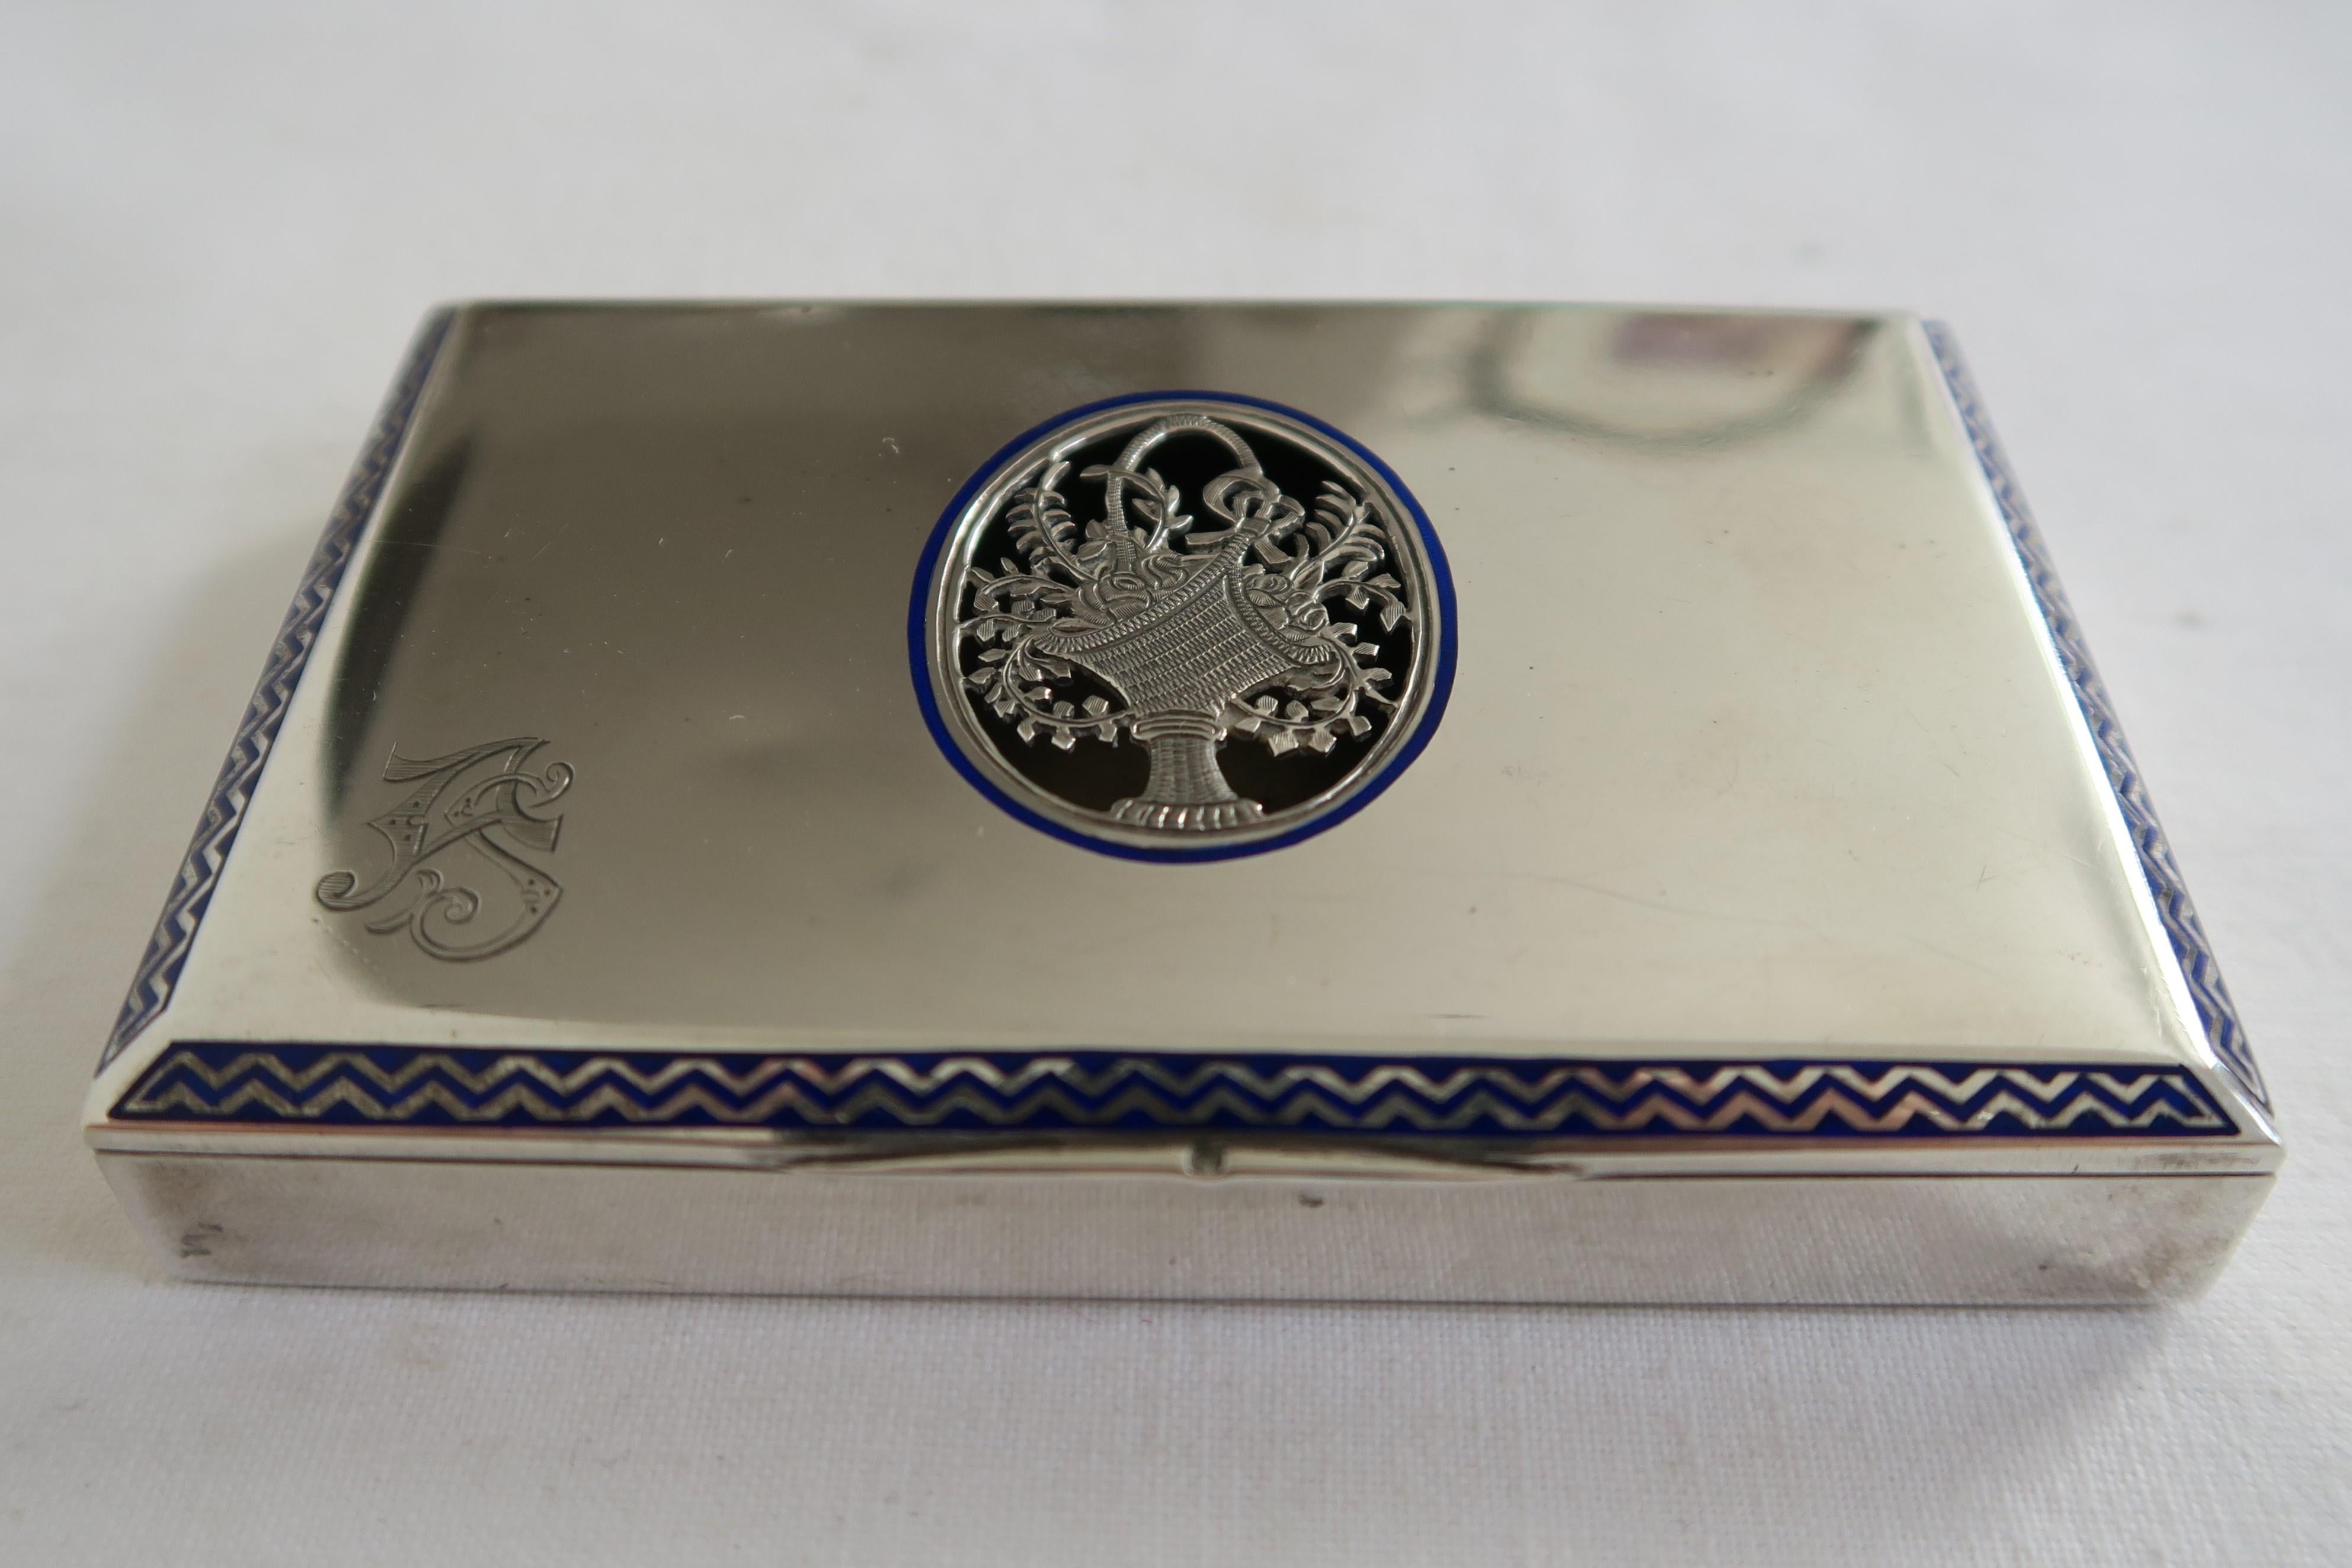 Zum Verkauf steht eine elegante Zigarettenschachtel. Sie ist aus massivem Silber gefertigt und mit dem Dianakopf gestempelt, der offiziellen Punze des österreichisch-ungarischen Kaiserreichs, die ausschließlich zwischen 1872 und 1922 verwendet